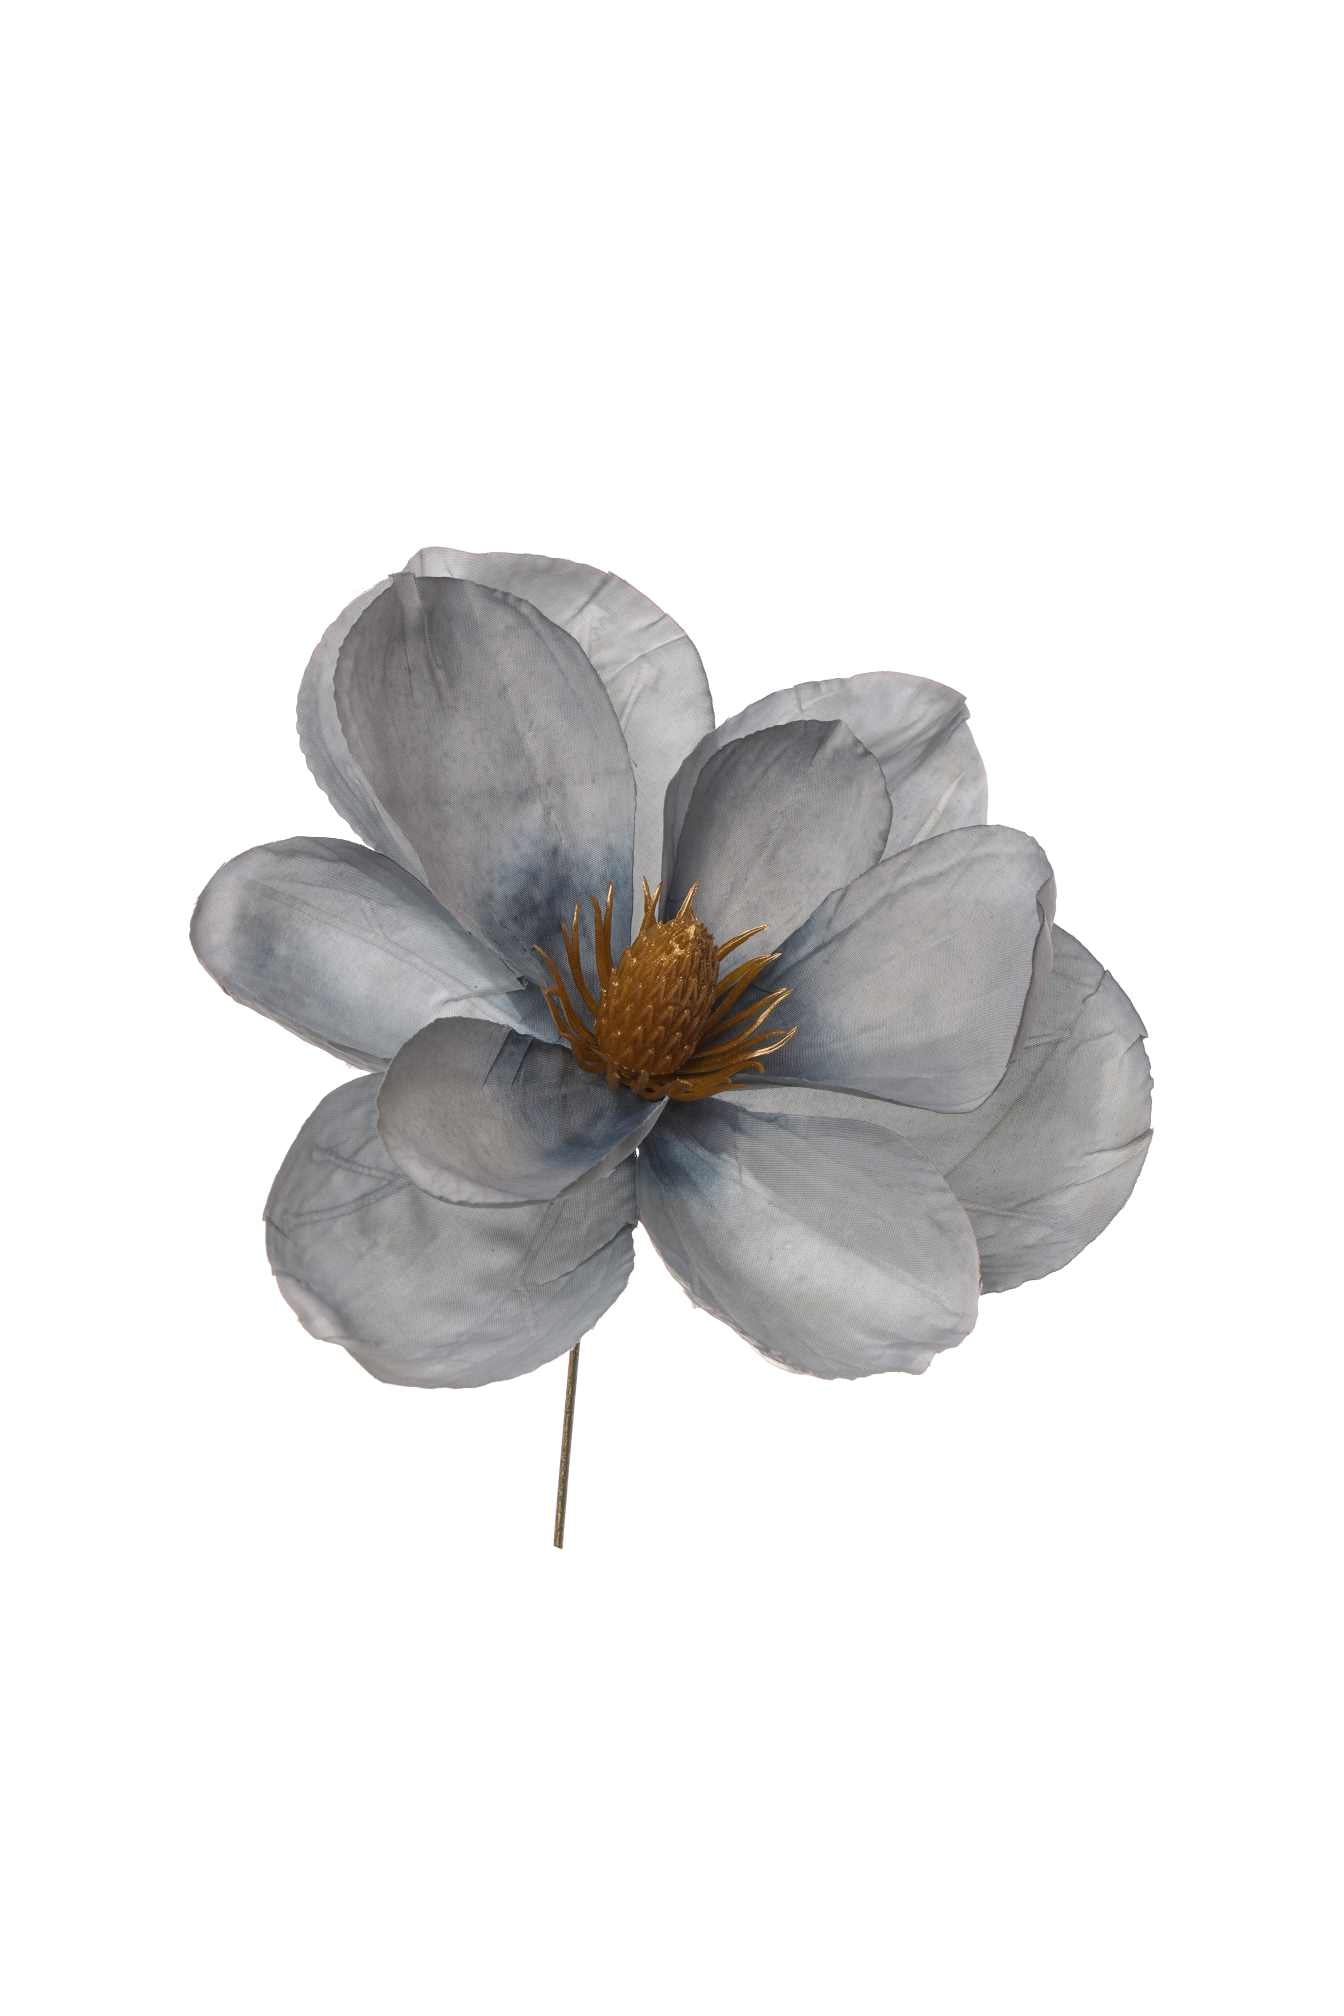 immagine-1-arpimex-pick-magnolia-blu-ean-8018318740039